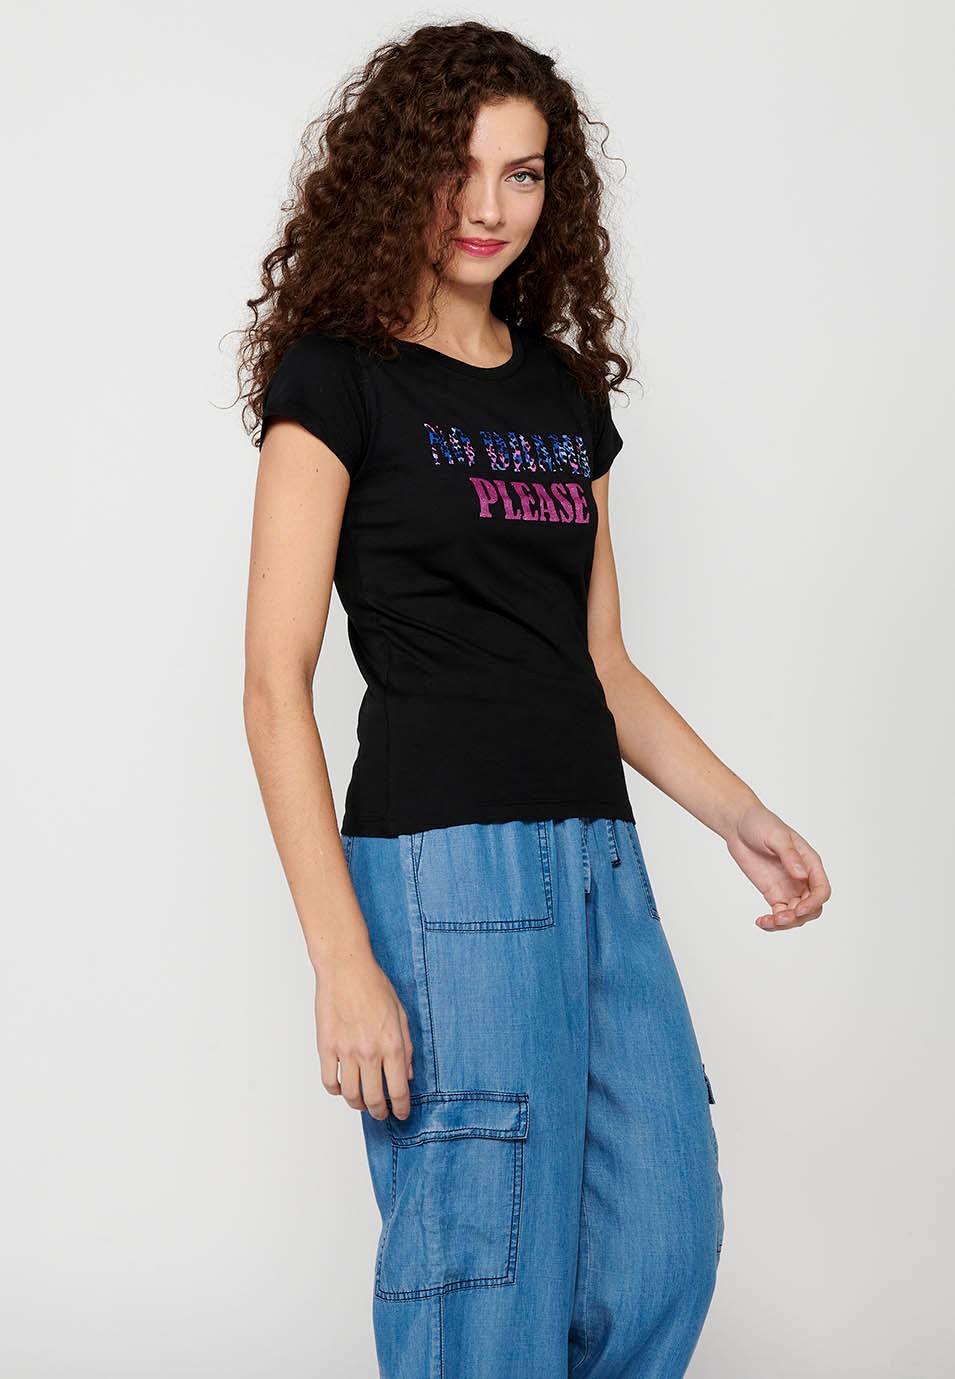 Women's Black Color Front Print Round Neck Cotton Short Sleeve T-shirt 3